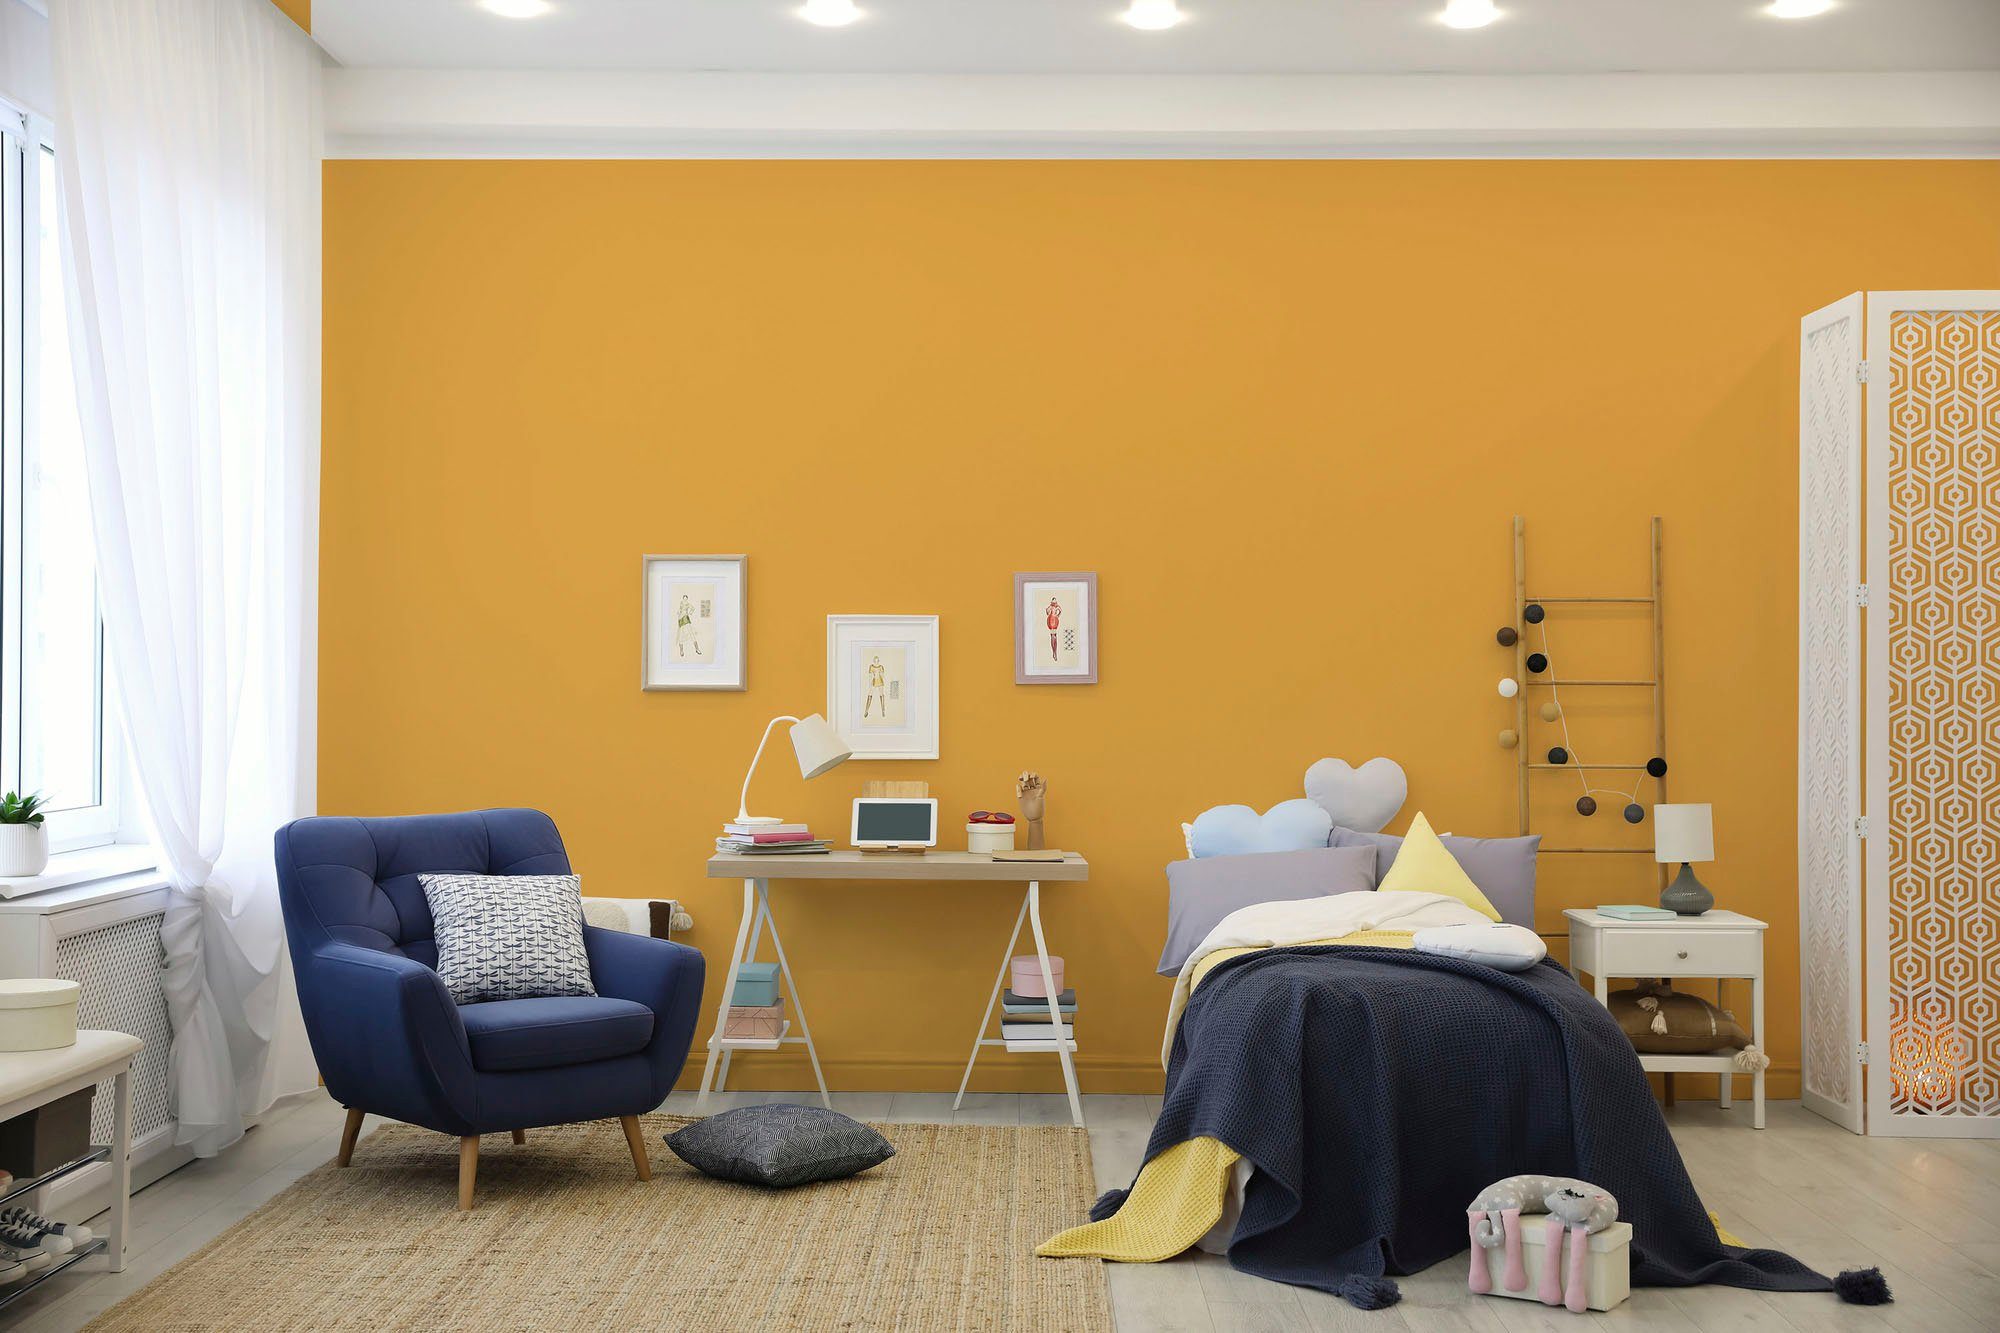 c8006 Flur und Schlafzimmer, Küche, Création Wohnzimmer, Gelb Tuchmatt Farbwelt sunny ideal Wandfarbe Innenwandfarbe sunny A.S. Premium yellow, yellow PURO für